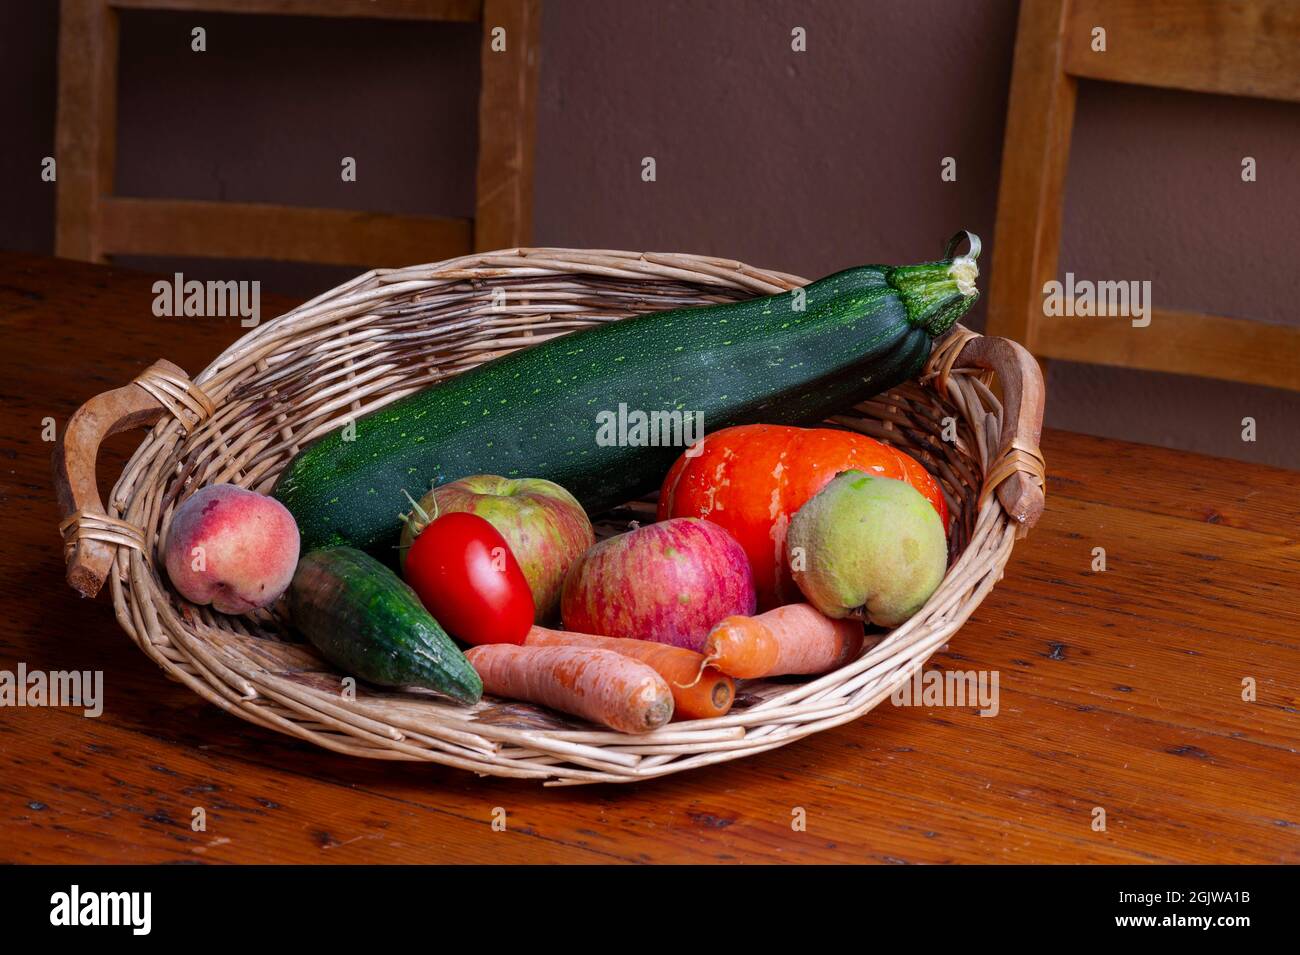 Fruits et légumes d'été, Alsace, France. Composition de produits de fin  d'été présentés dans un panier en osier sur une table Photo Stock - Alamy